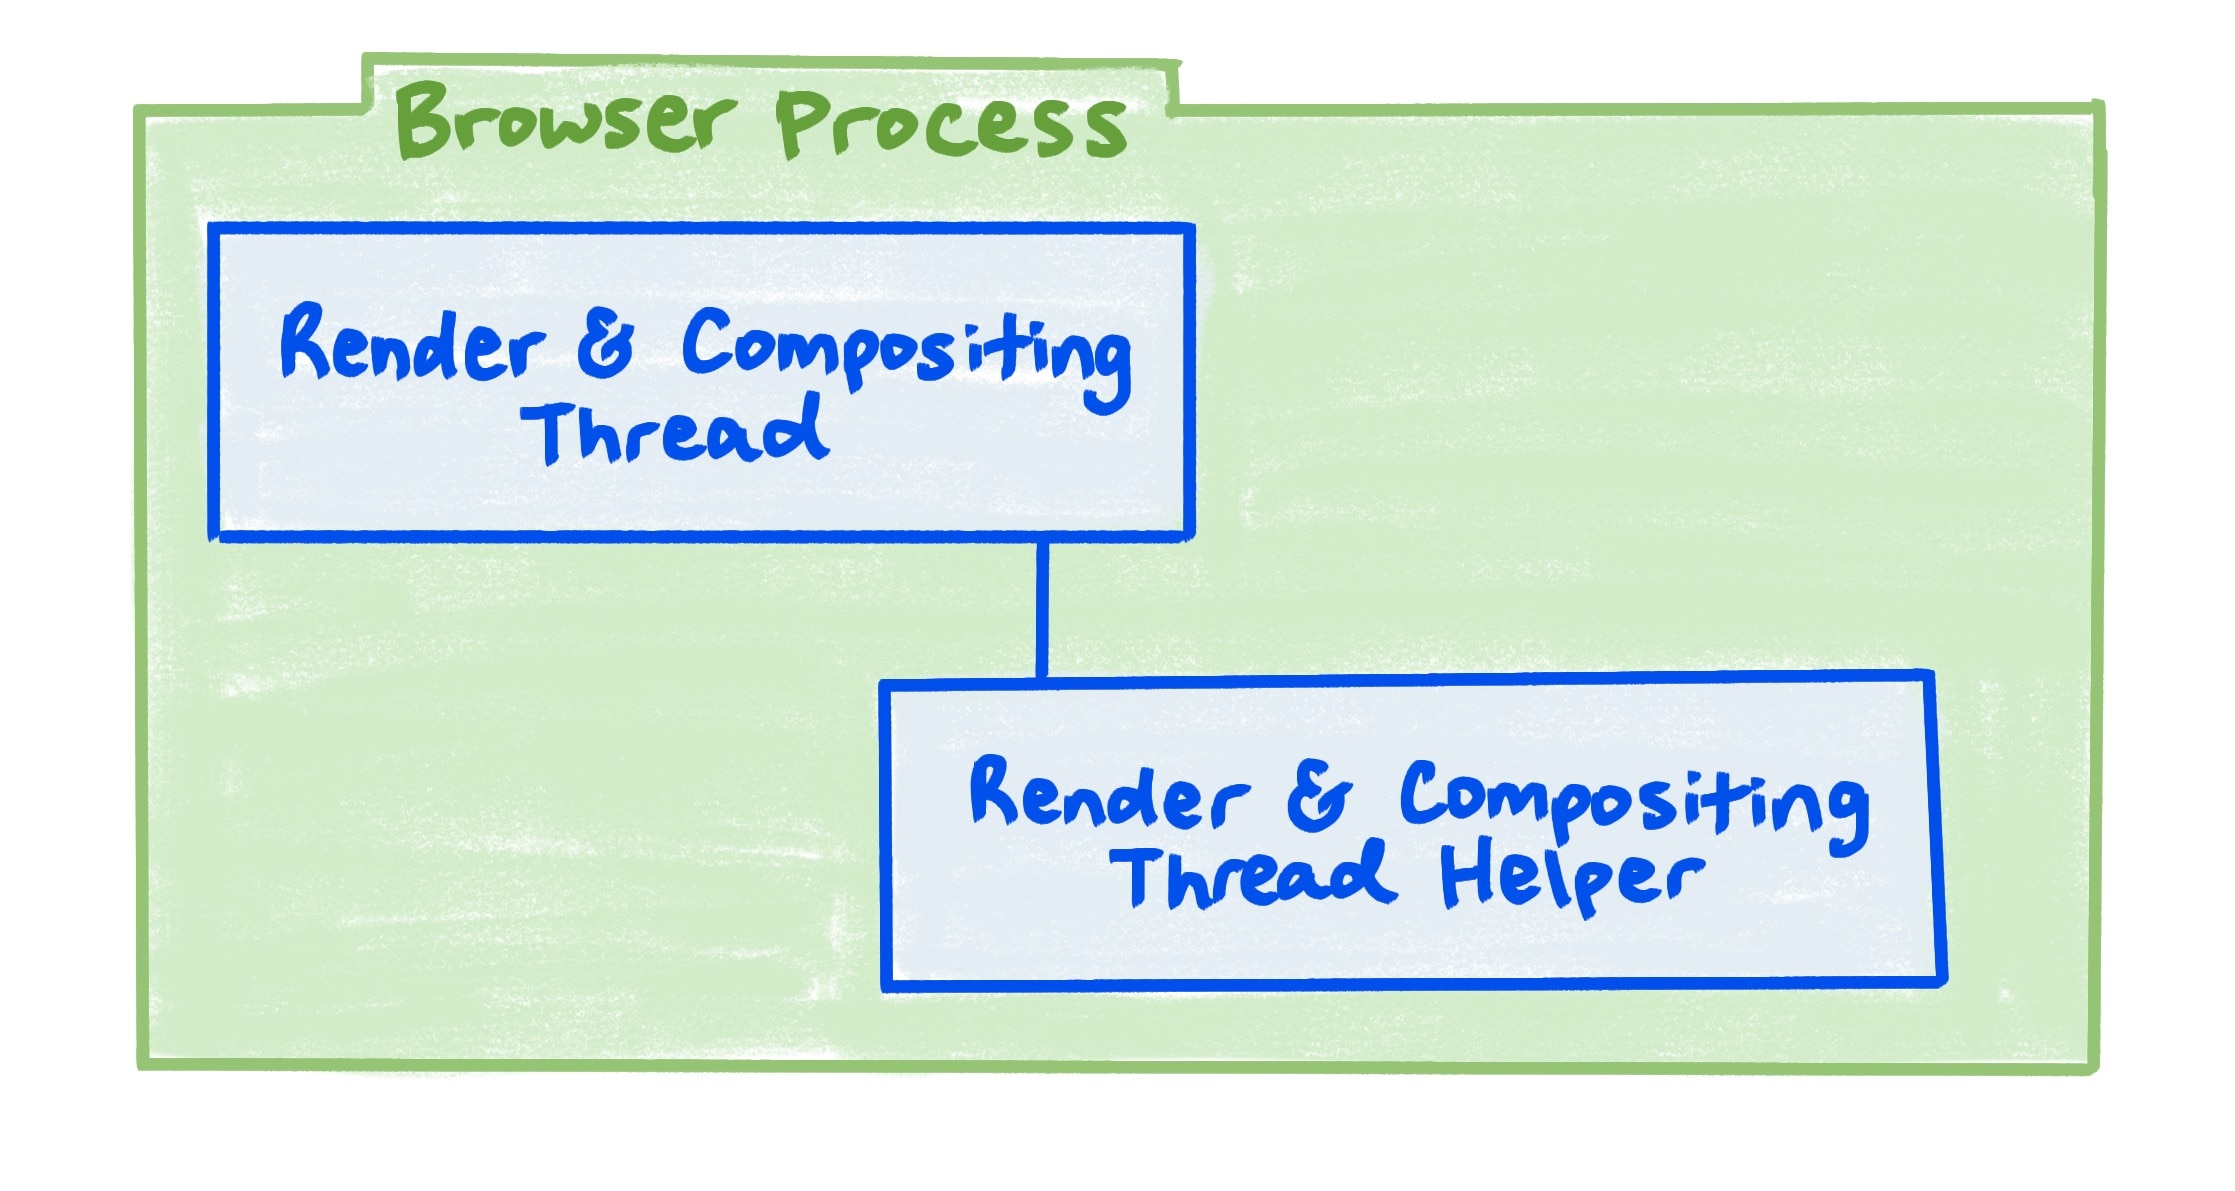 یک نمودار فرآیند مرورگر که رابطه بین Render و thread ترکیبی و کمک کننده رشته render و compositing را نشان می دهد.